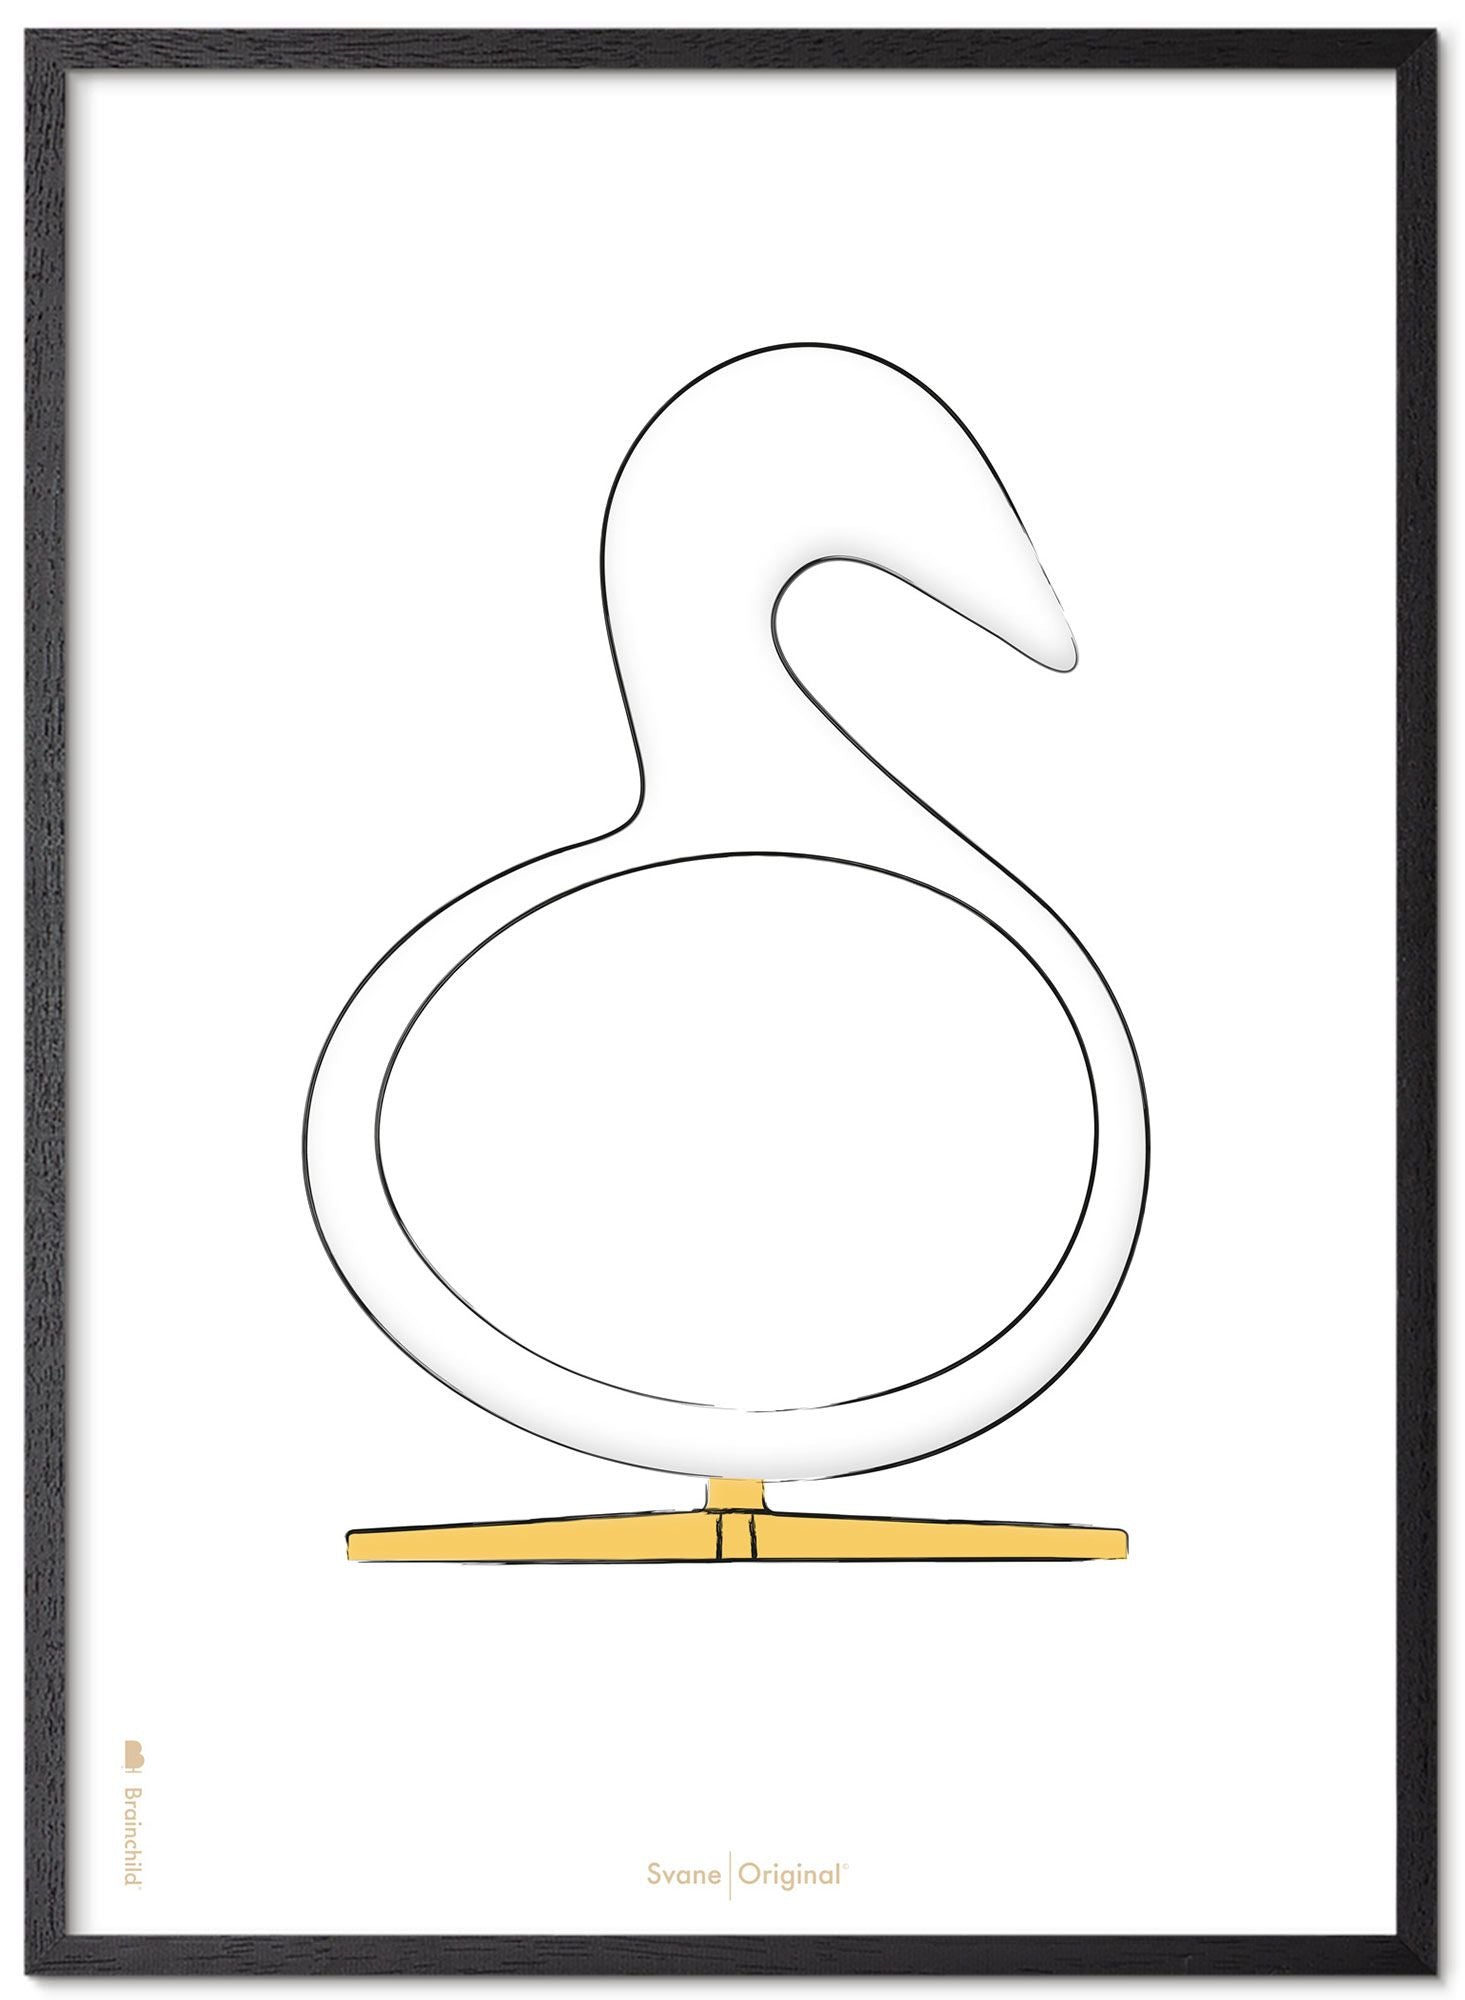 Schema poster di schizzi di disegno del cigno da gioco realizzato in legno laccato nero A5, sfondo bianco